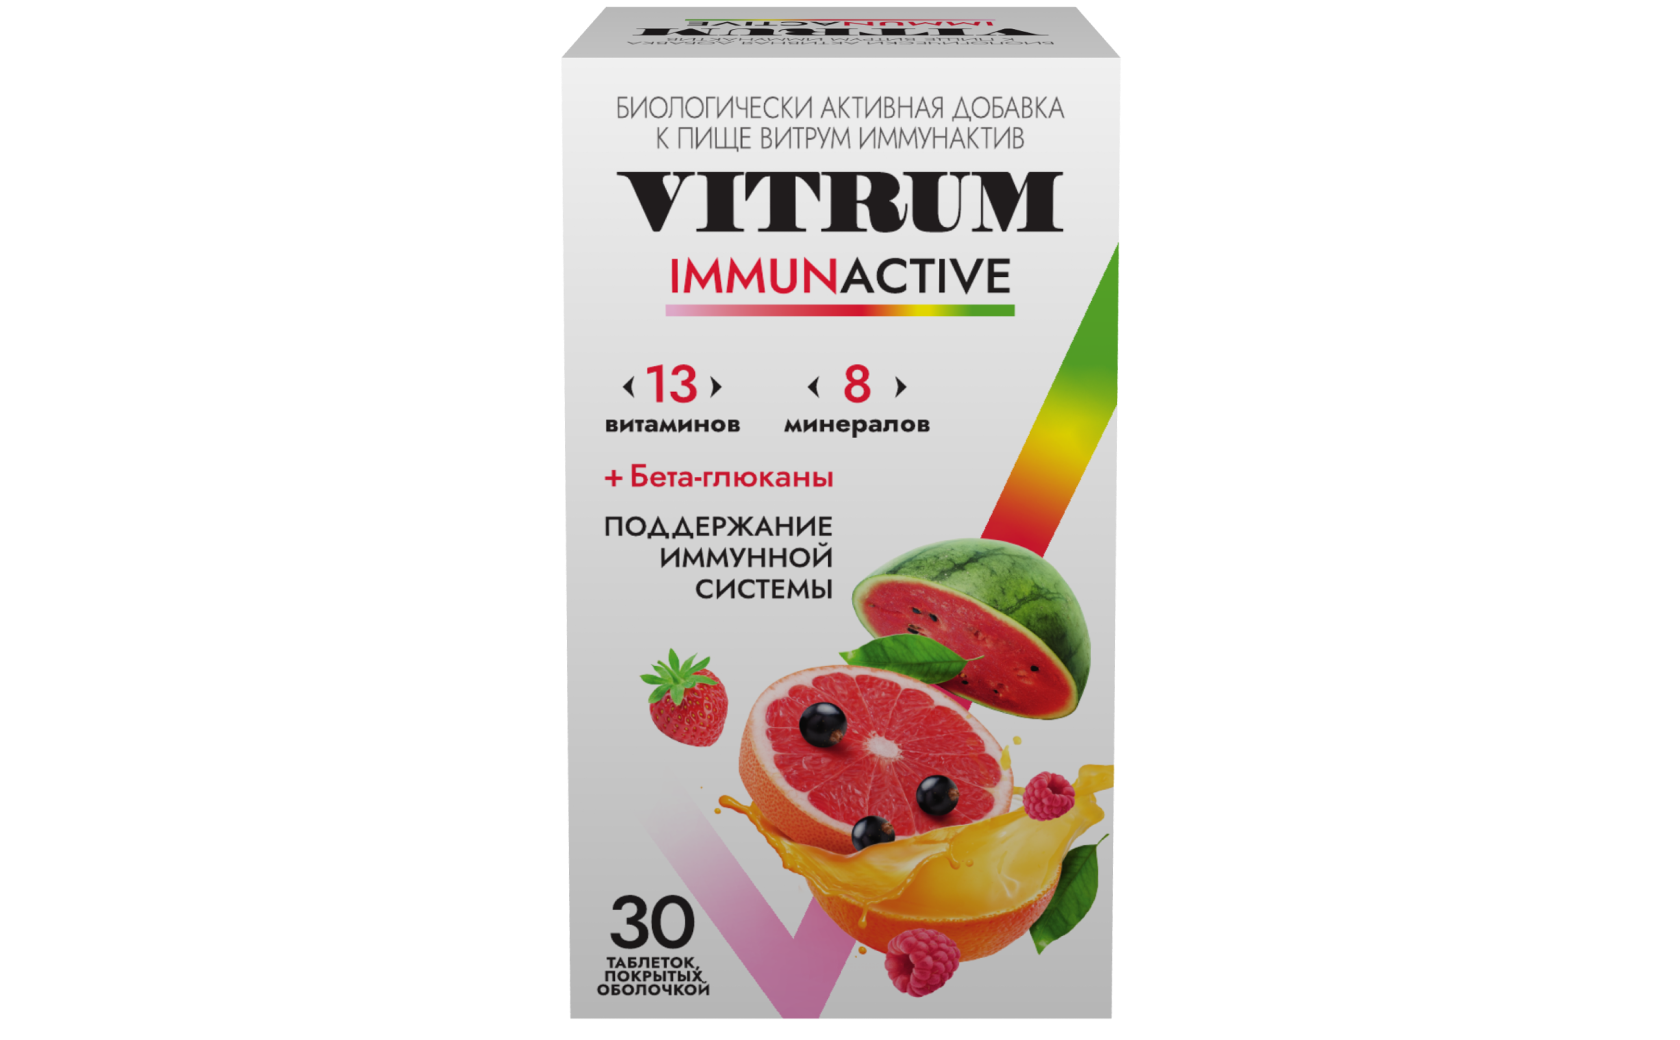 Витрум® Иммунактив 30 таблеток: фото упаковки, действующее вещество, подробная инструкция по применению